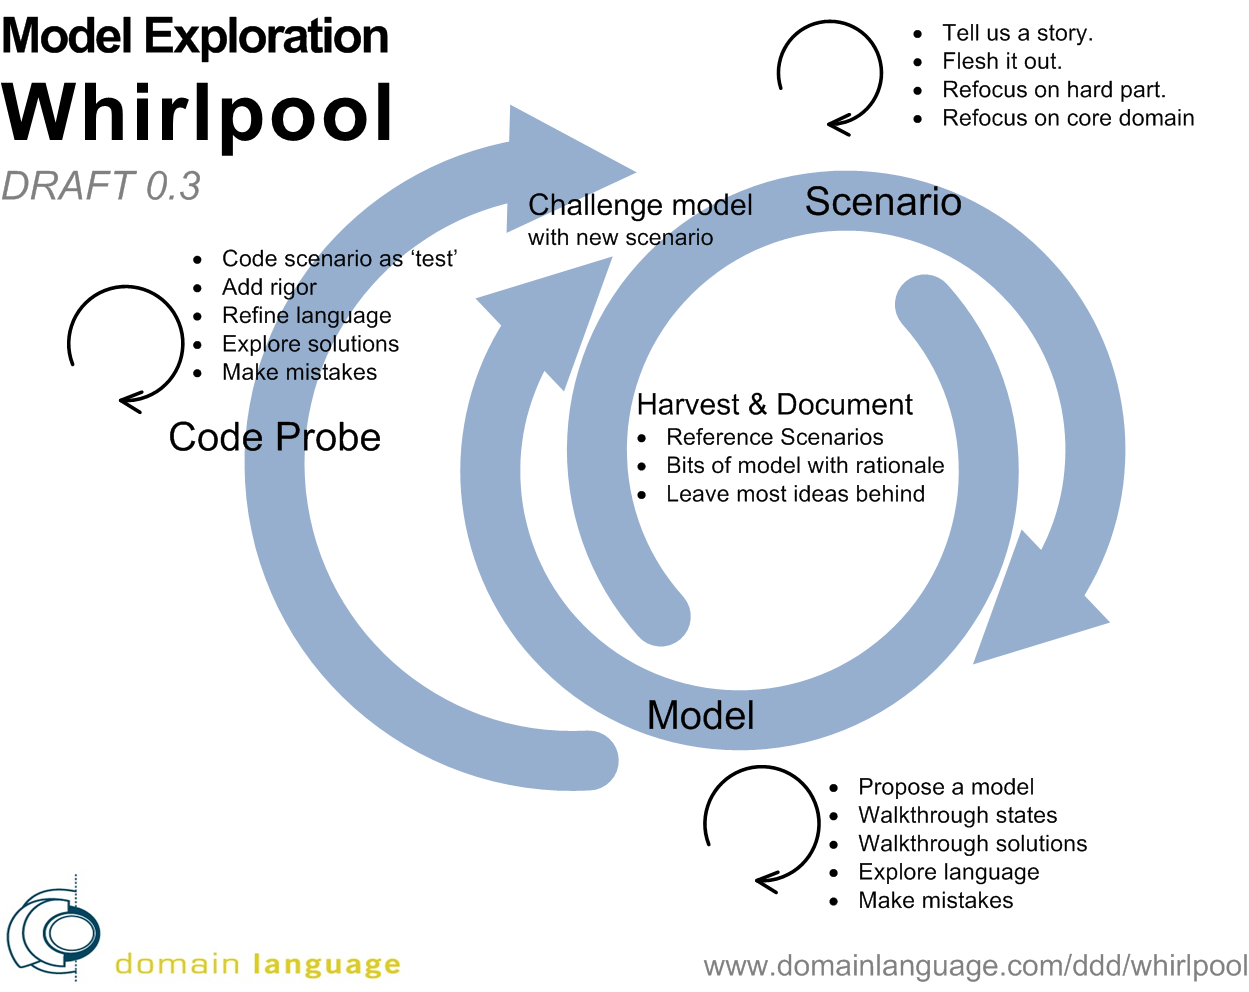 DDD Model Whirlpool